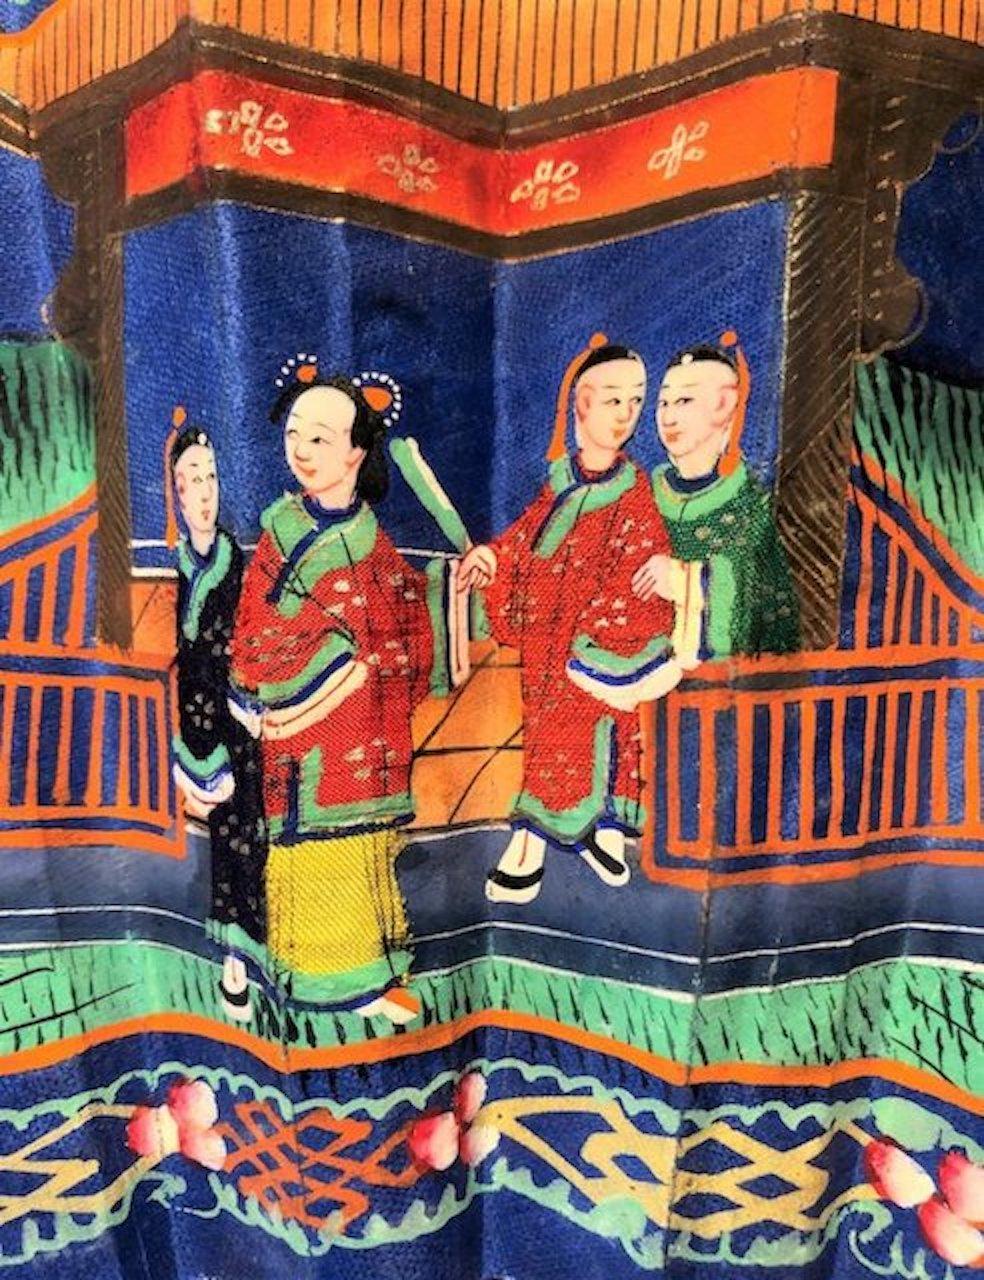 Schöner chinesischer Fächer aus Kanton aus dem 19. Jahrhundert aus Knochen, Papier und Seide.

Abmessungen: H: 49cm, B: 28cm, T: 2cm.

 